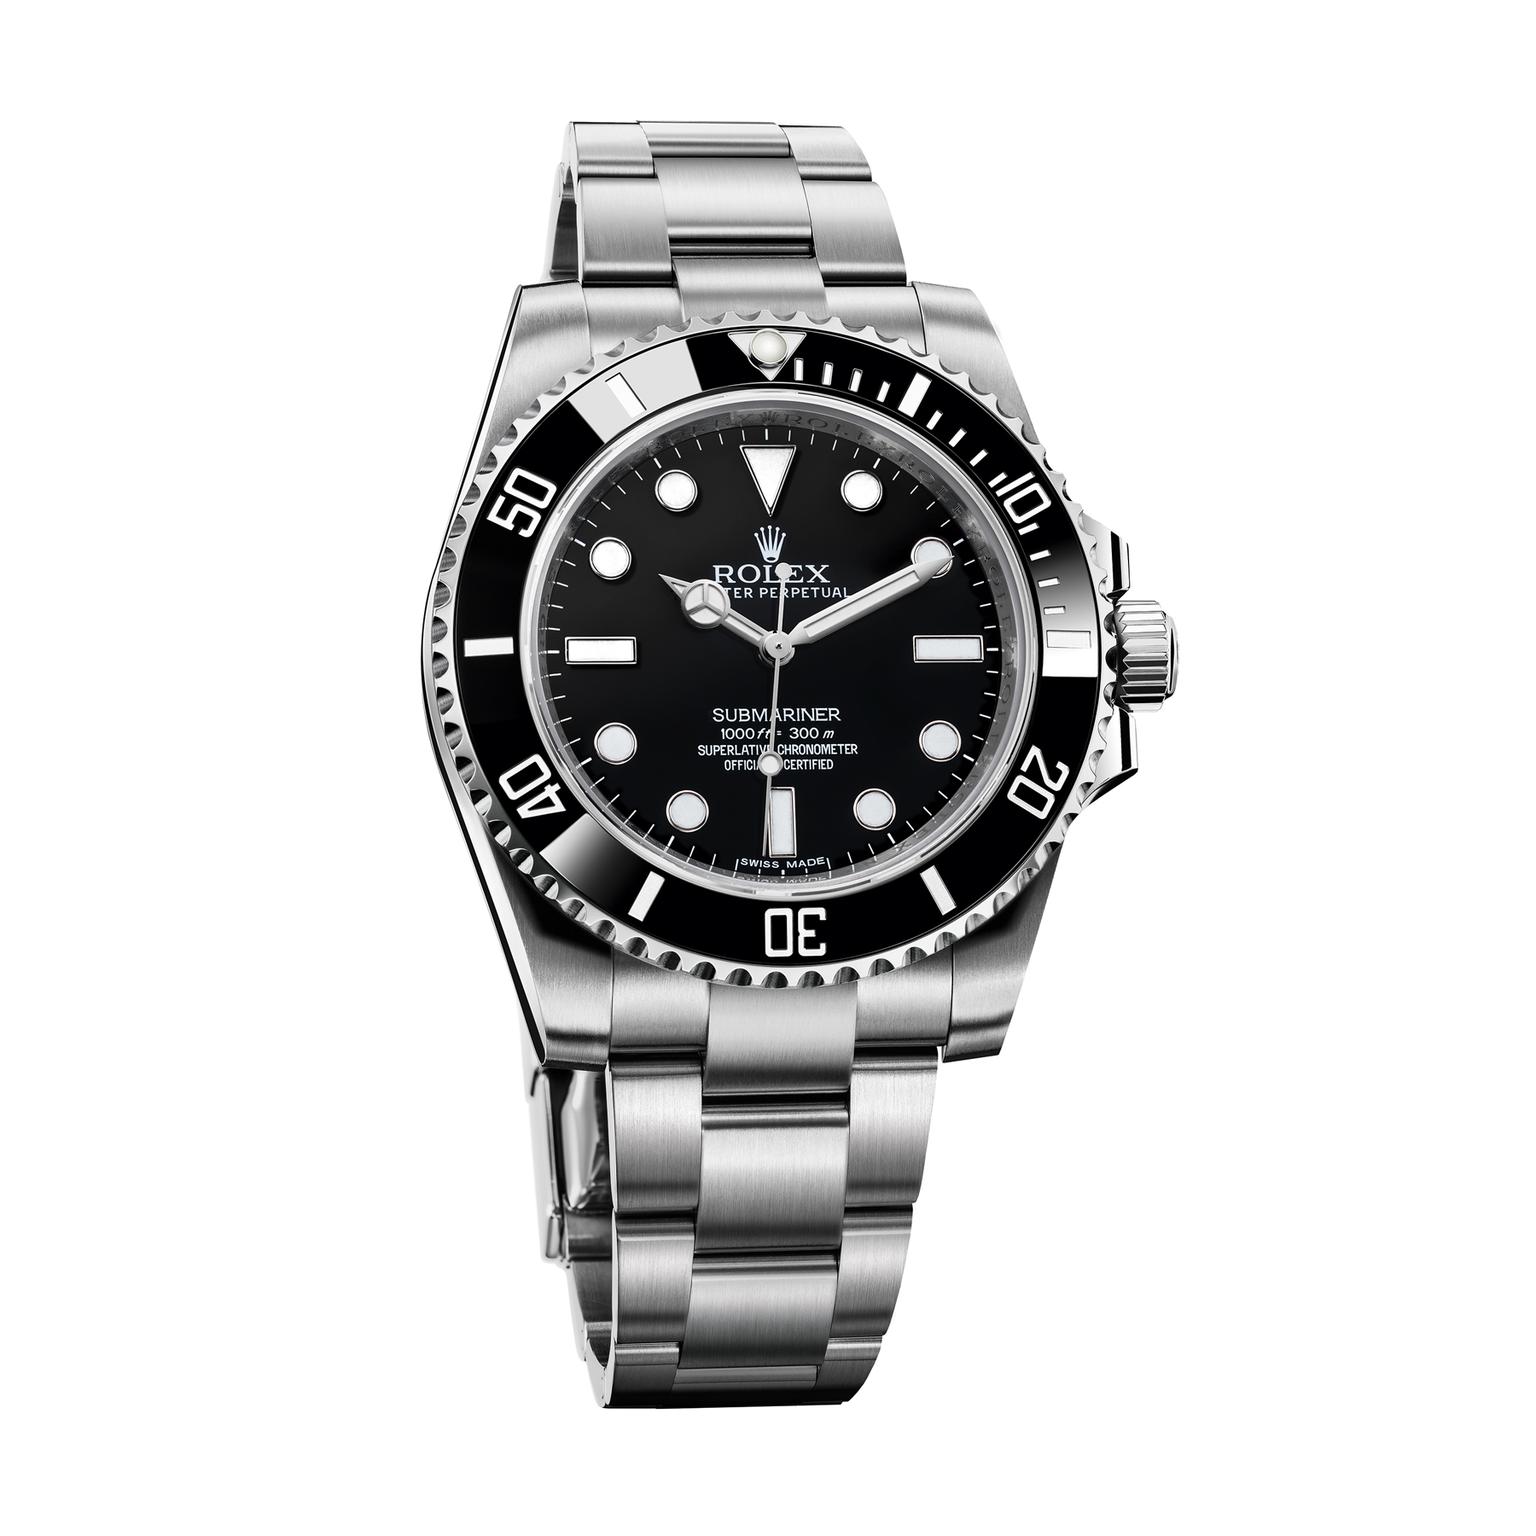 Rolex Submariner watch in steel